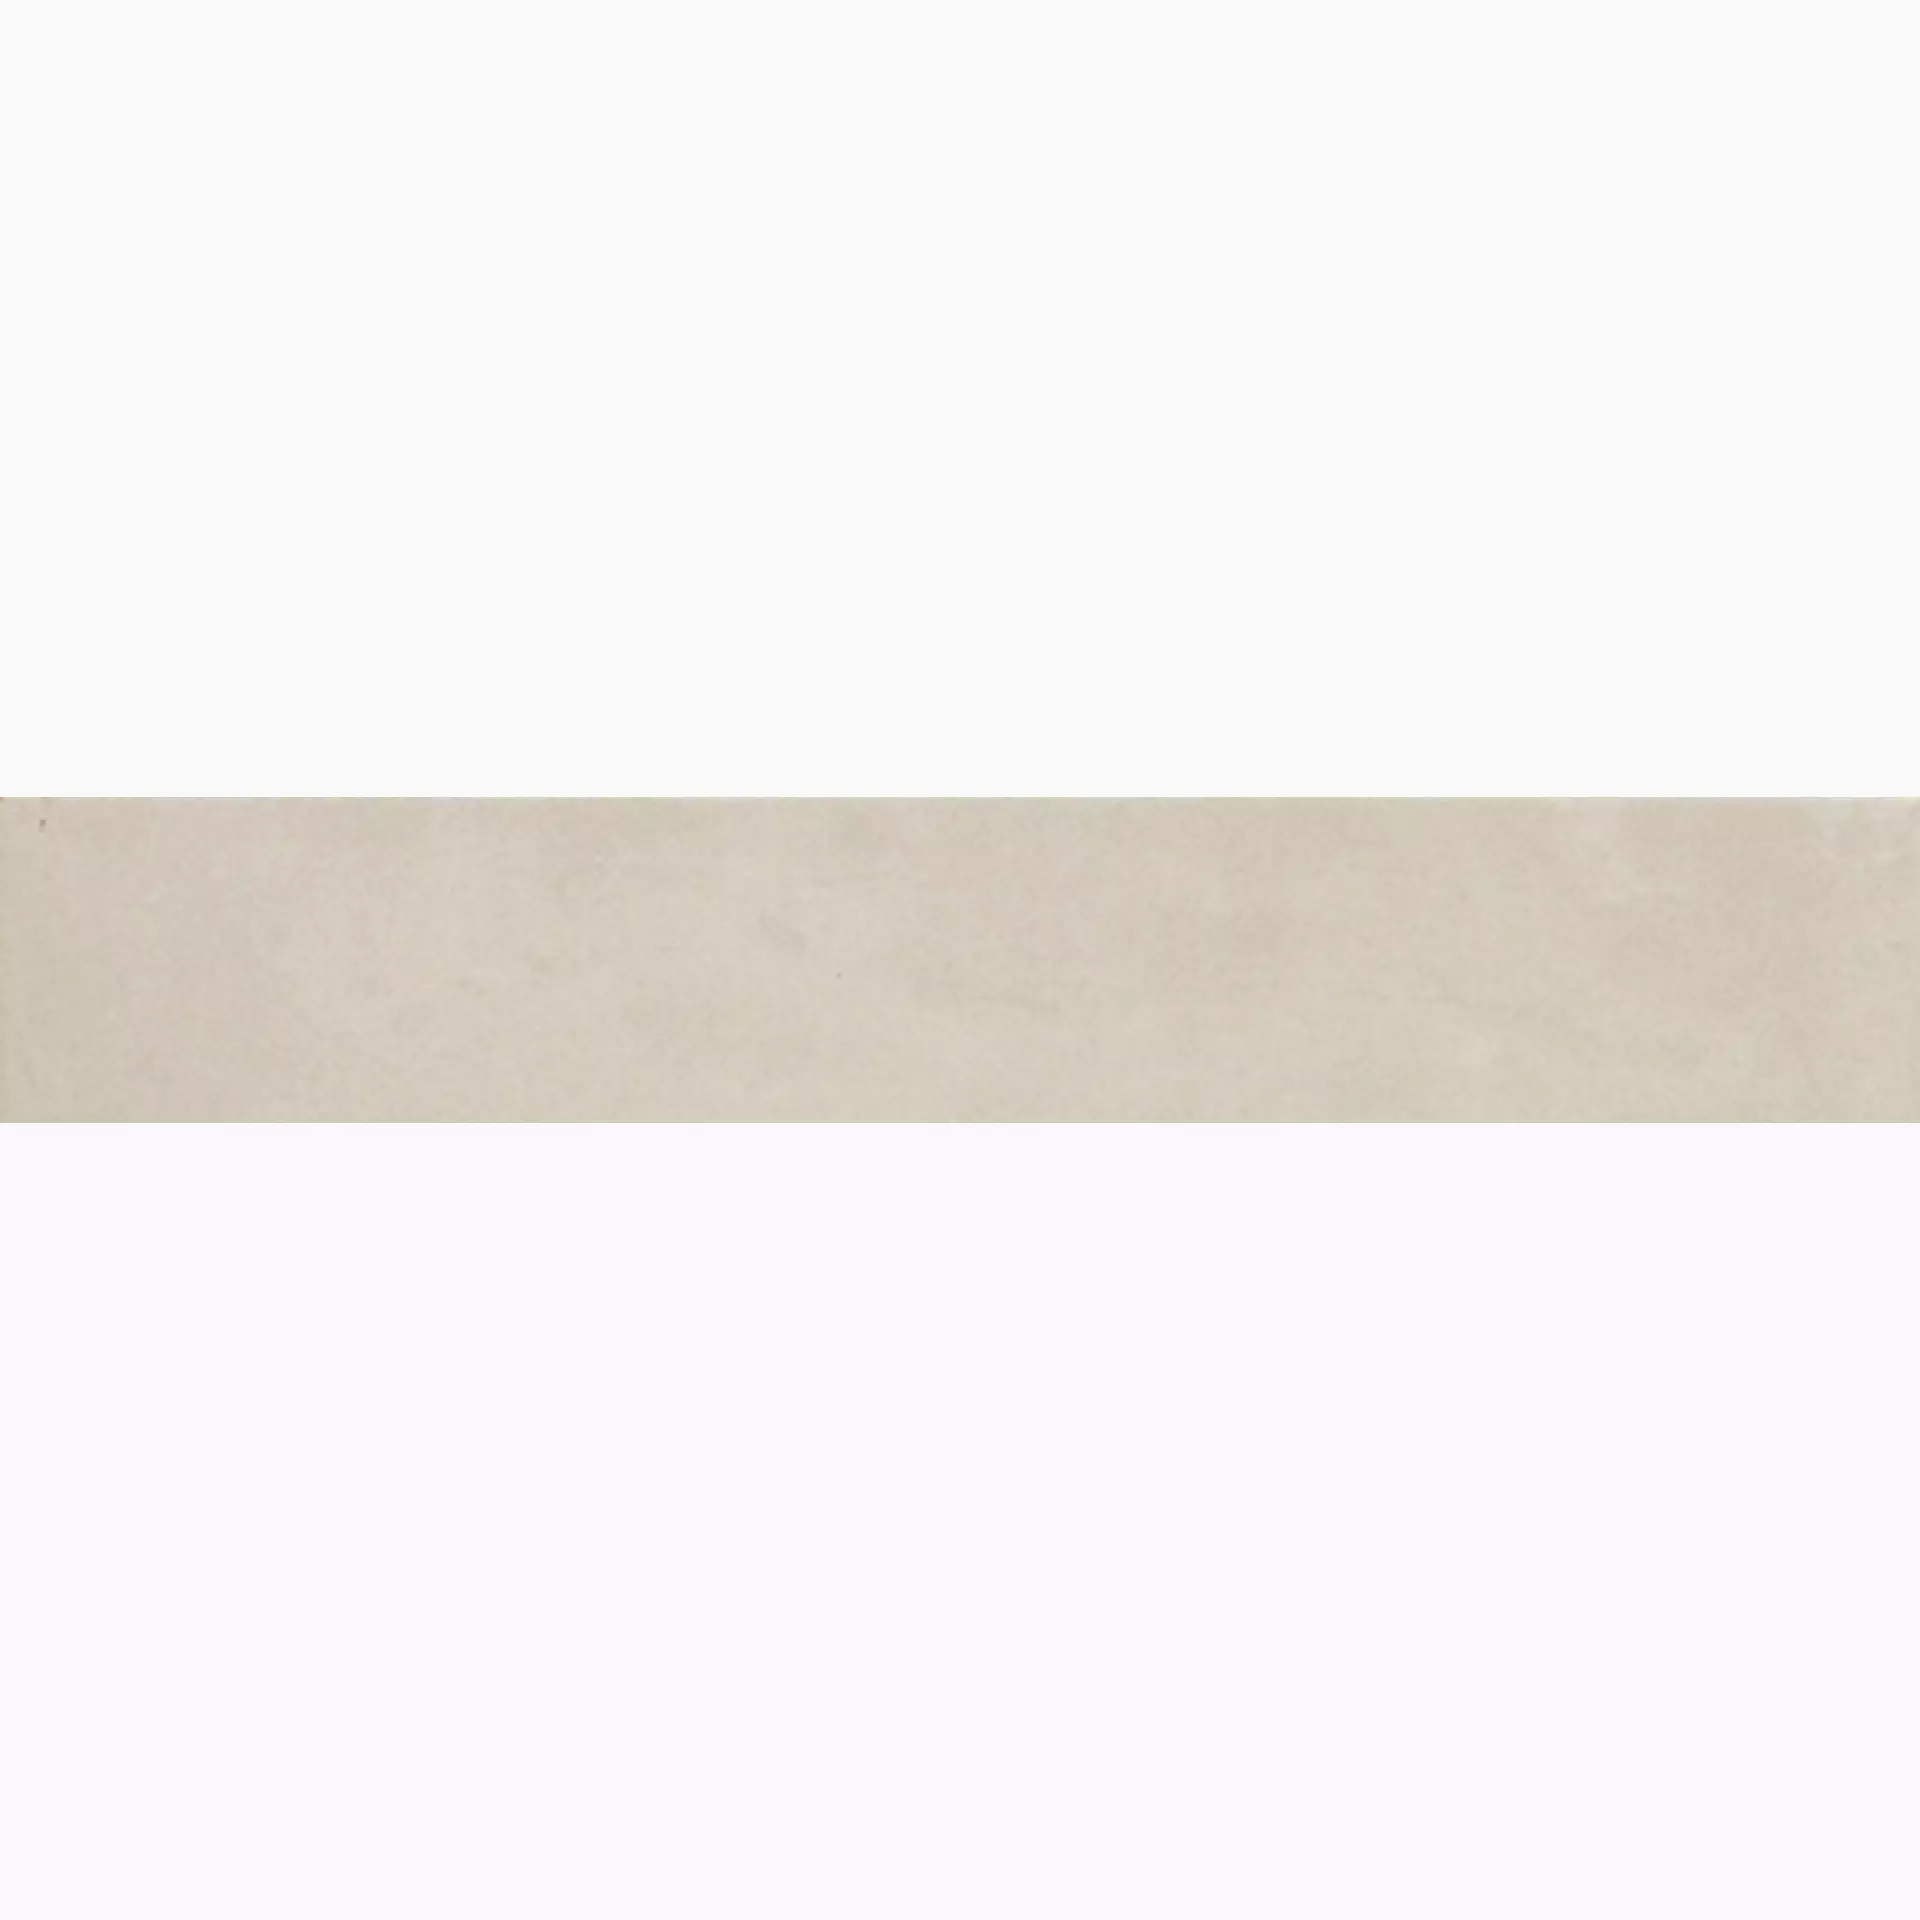 Marazzi Sistemn Sabbia Naturale – Matt M834 10x60cm rectified 10,5mm